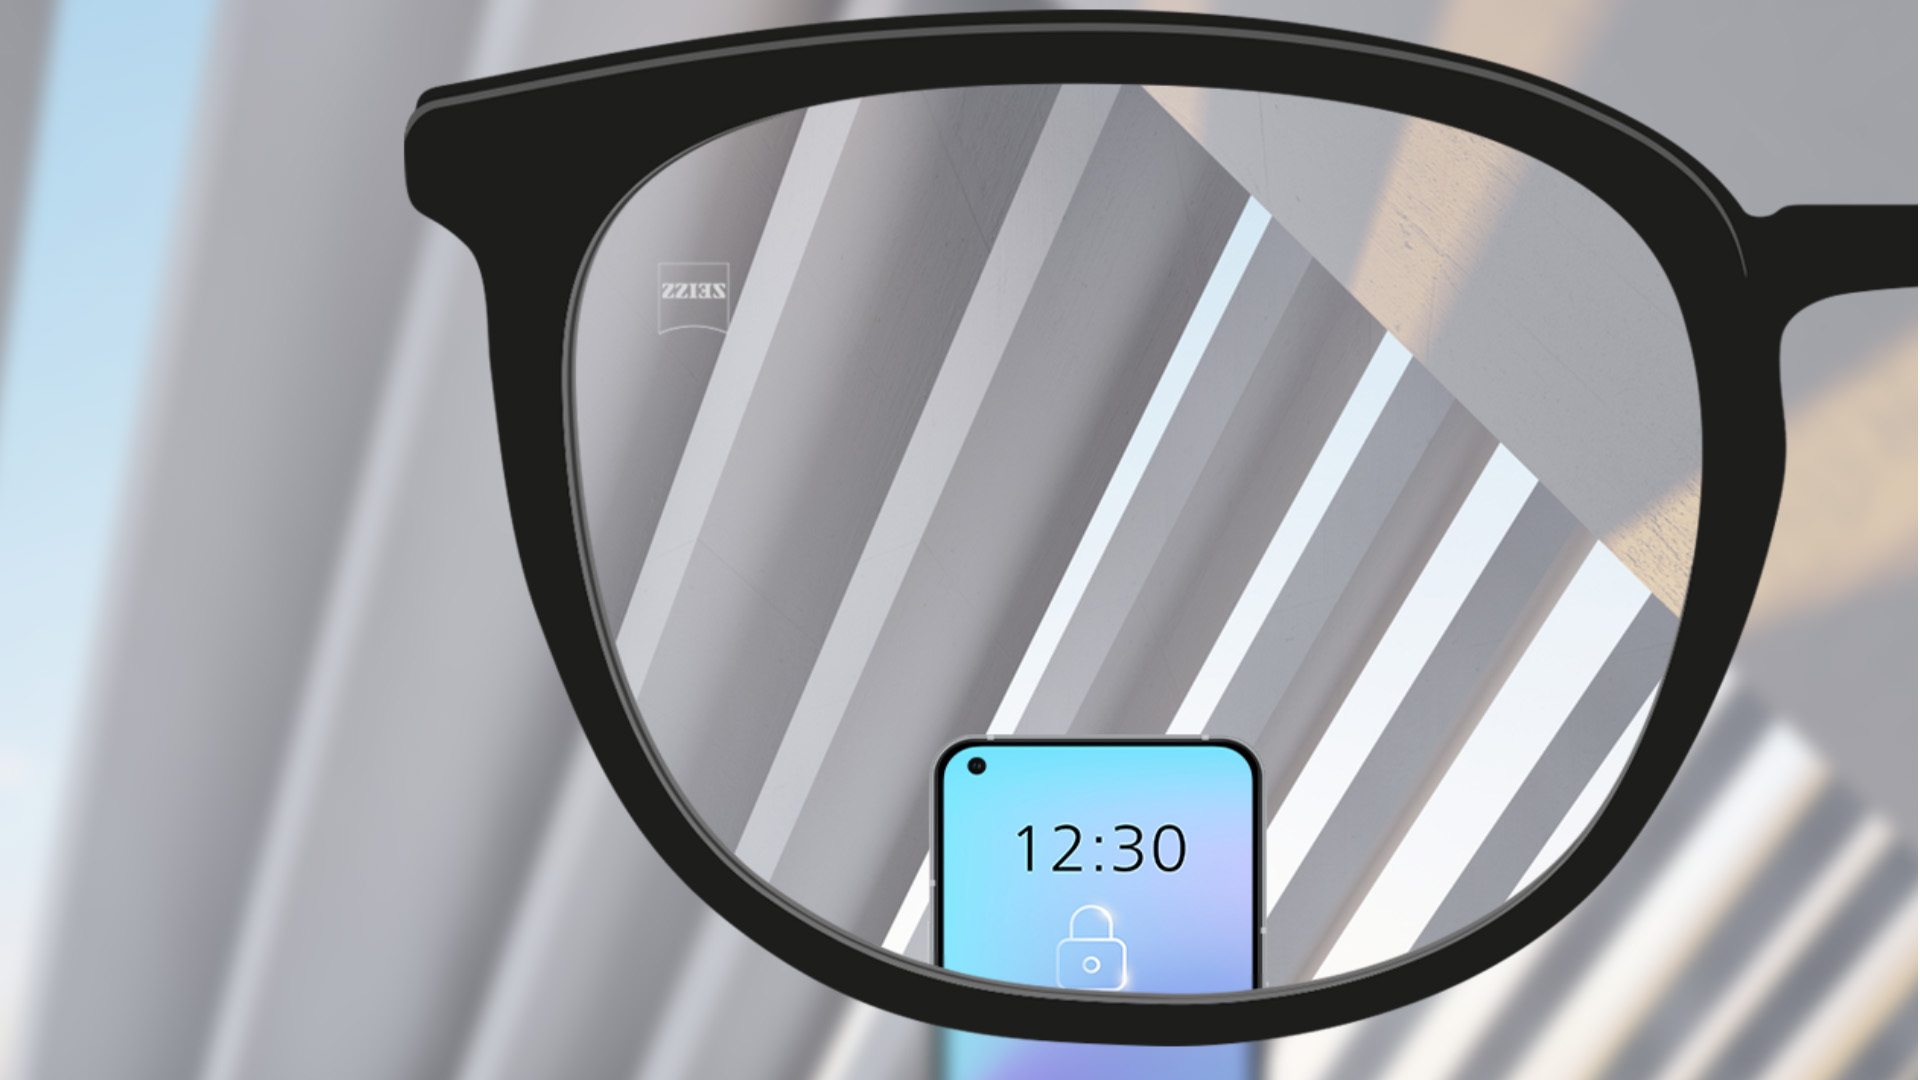 자이스 스마트라이프 단초점 렌즈의 시점으로 본 모습. 스마트폰이 보이고 렌즈가 완전히 선명하다.